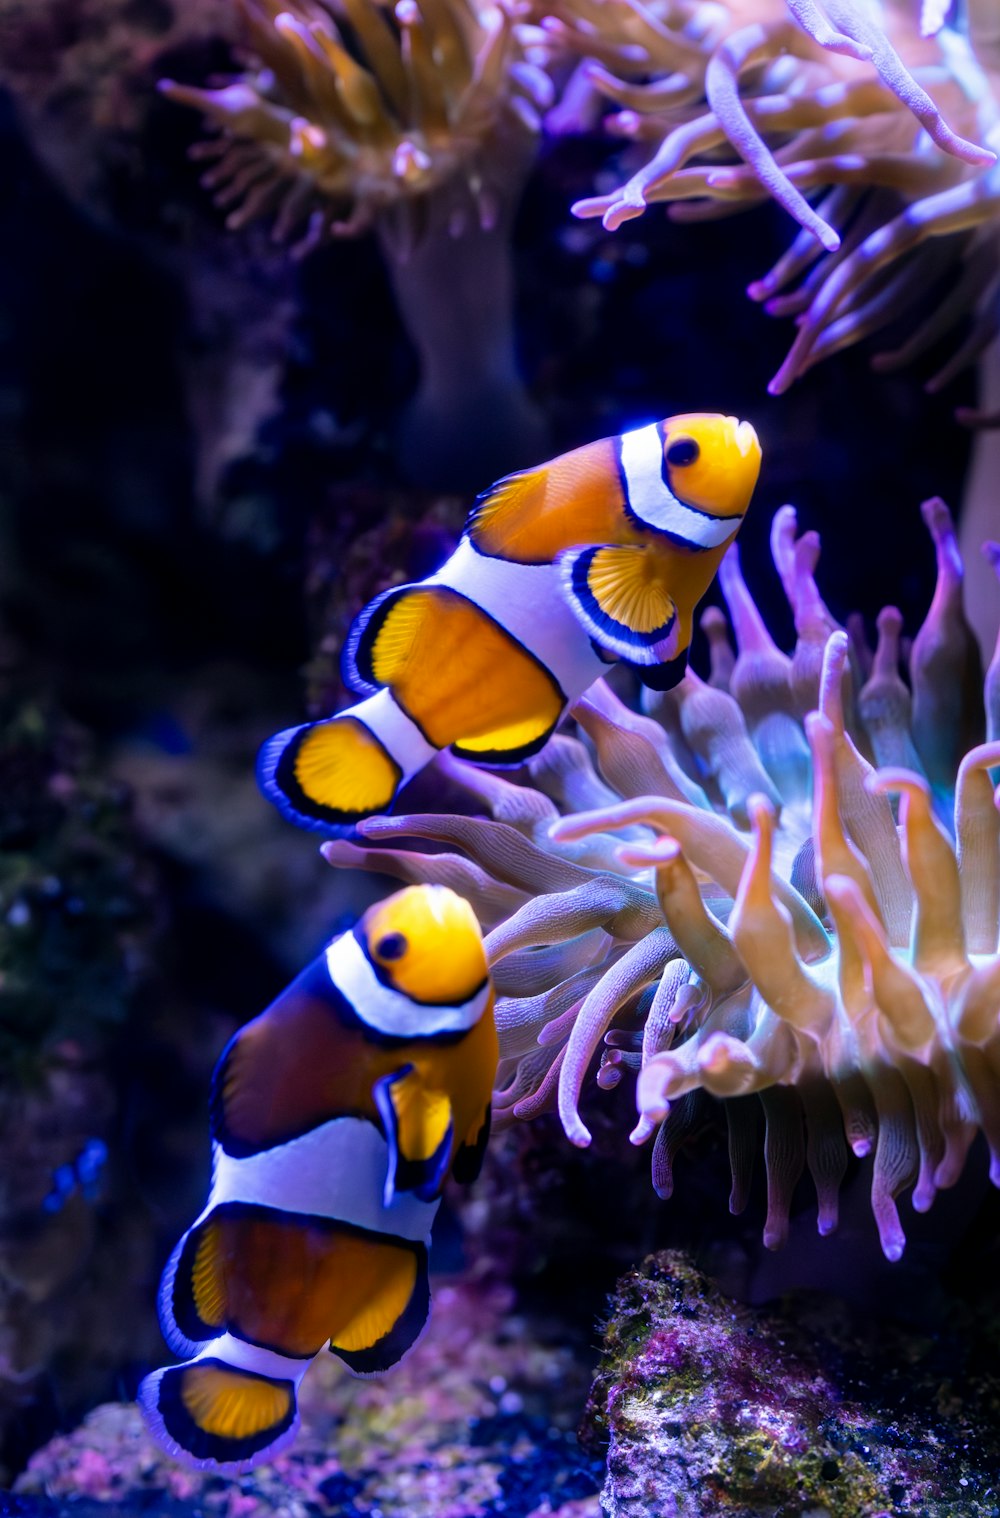 a couple of clown fish in an aquarium